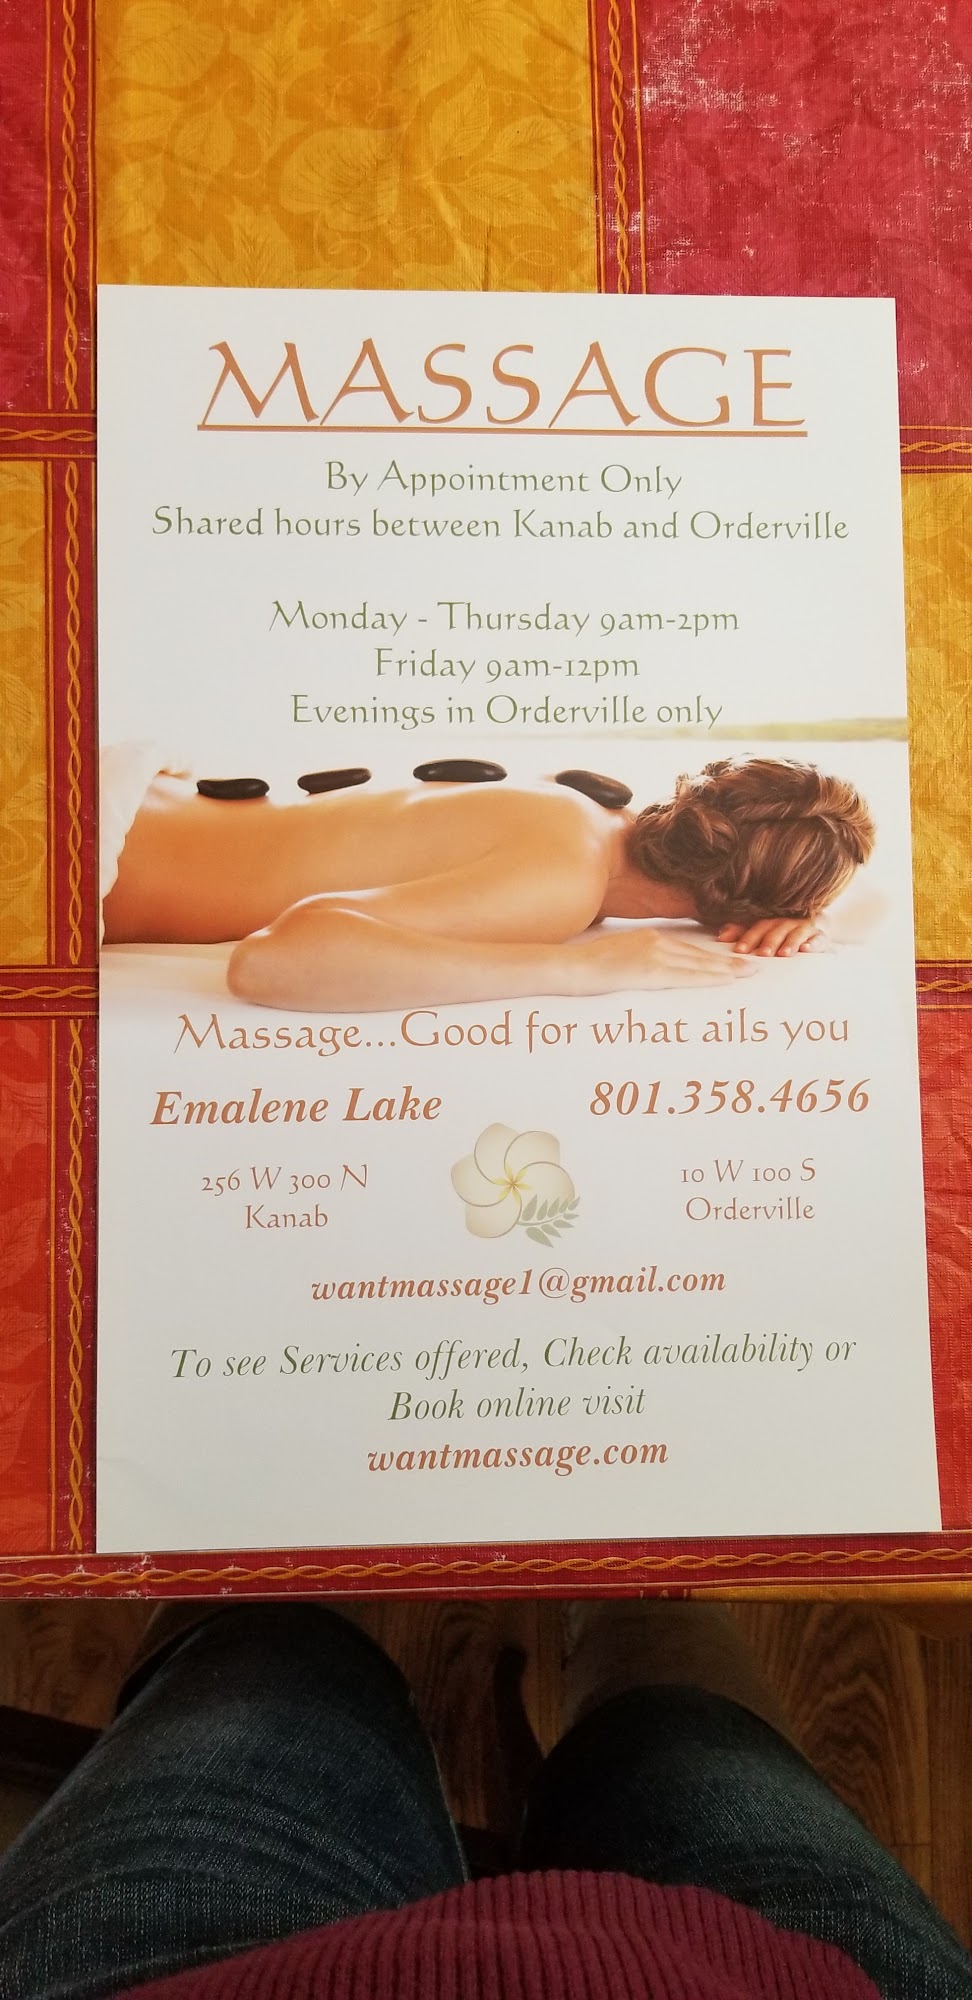 Want Massage, Emalene Lake LMT 256 300 N, Kanab Utah 84741